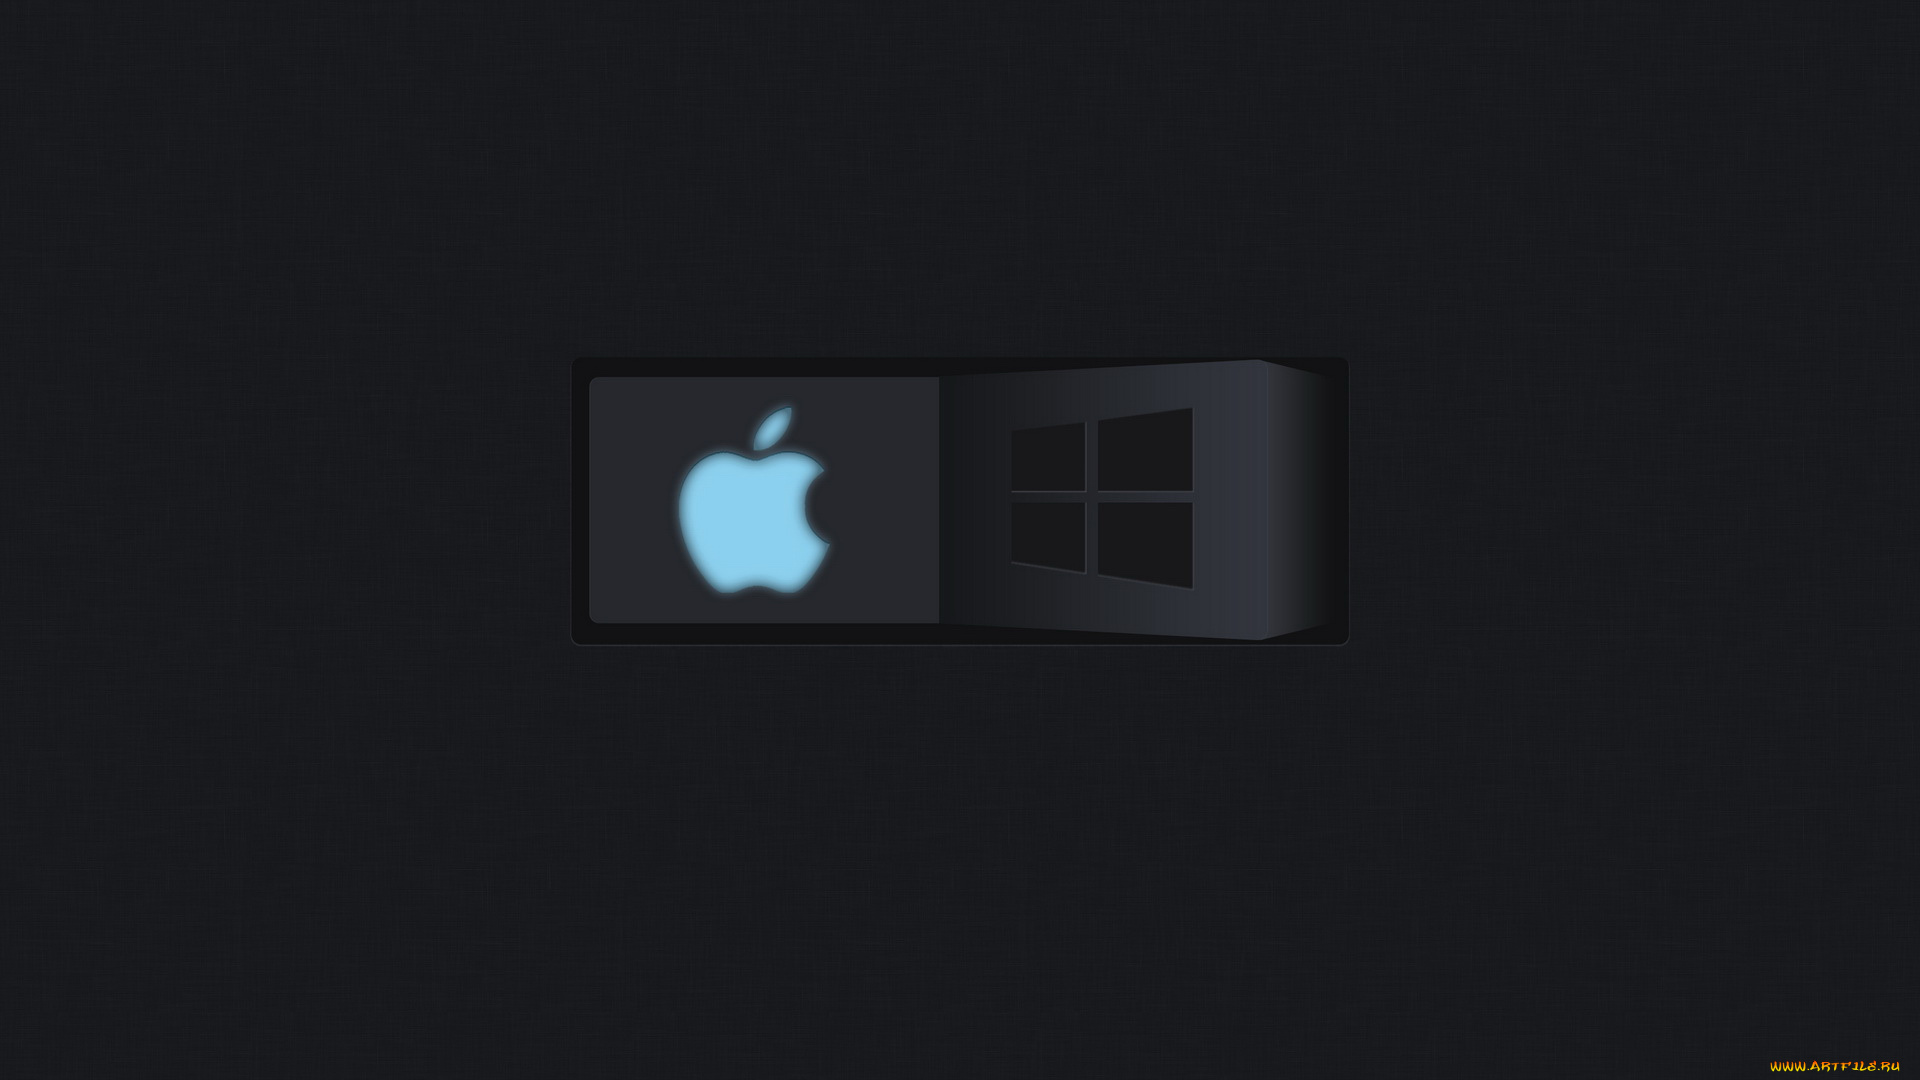 компьютеры, windows, 8, логотип